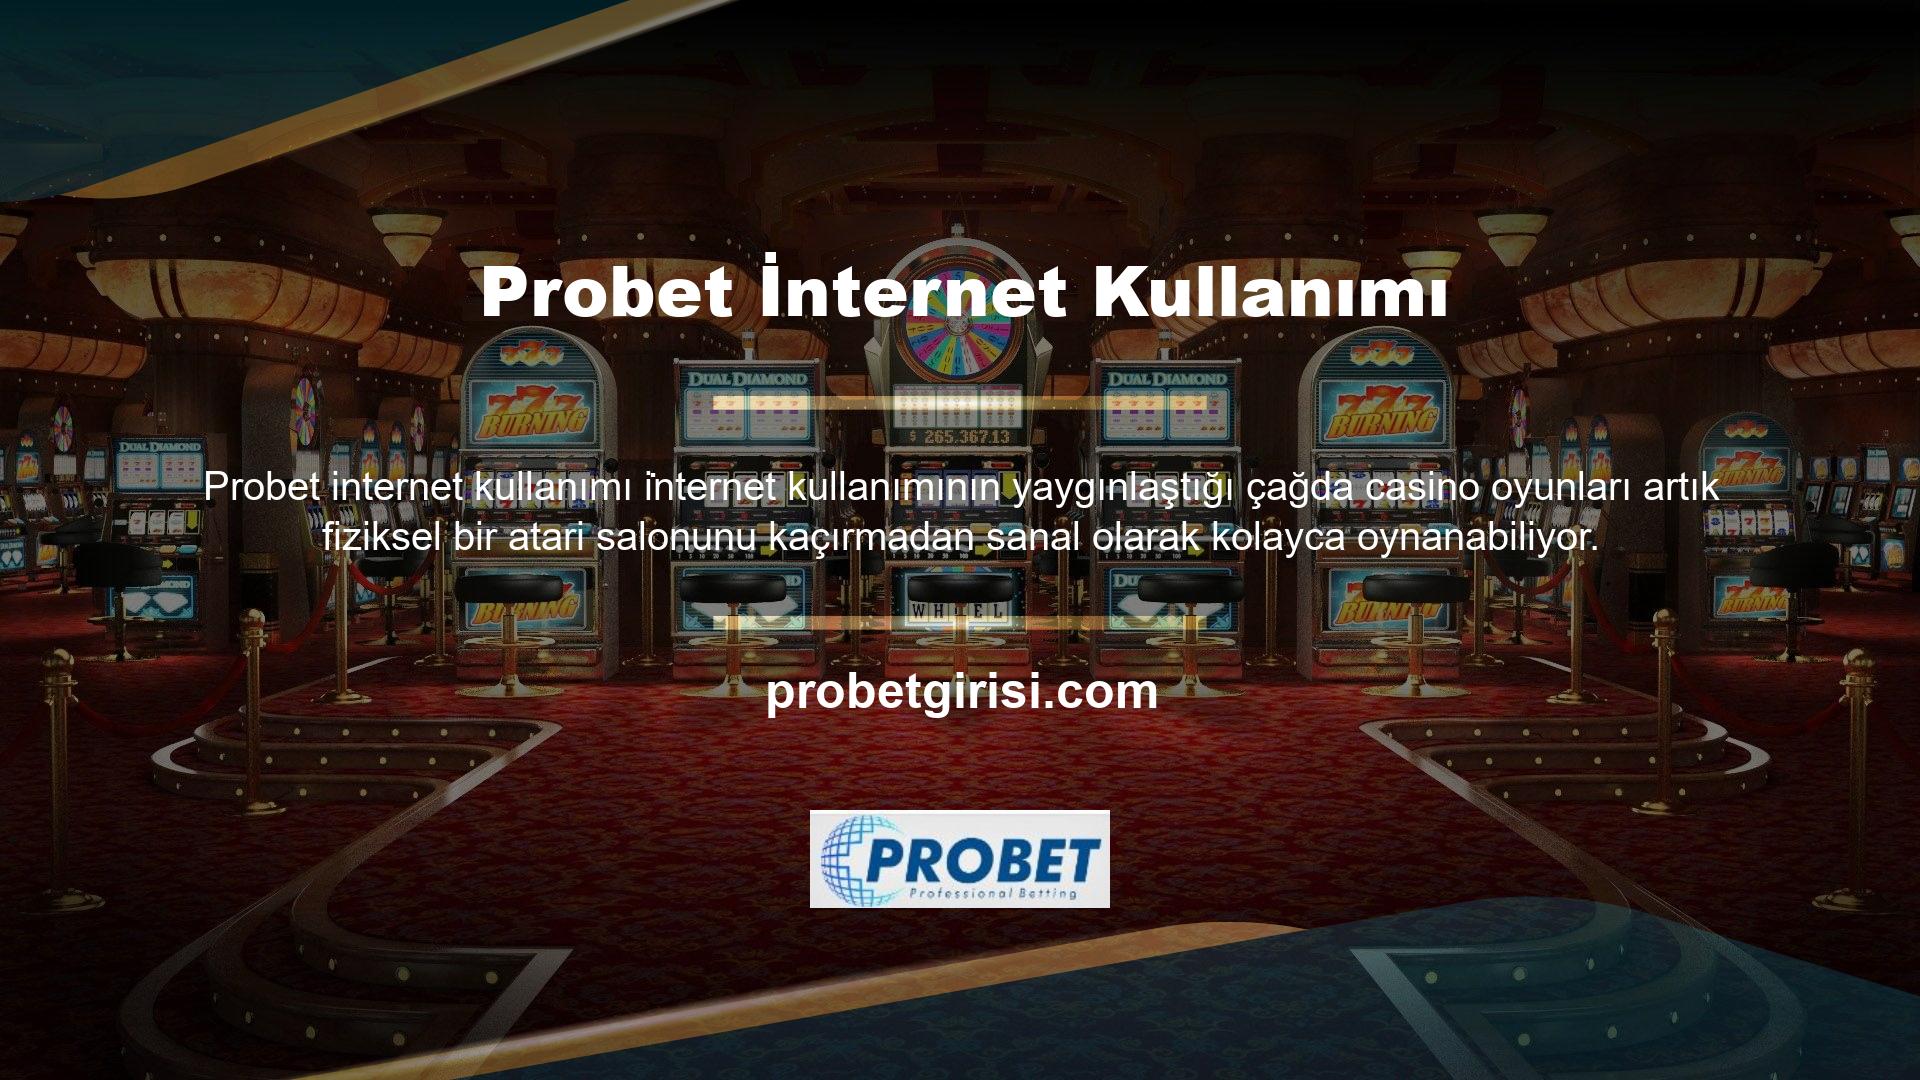 Eski adıyla Probet olarak bilinen Probet, tüm bu sanal casino oyun siteleri arasında köklü ve güvenilir olup 7/24 hizmet sunmaktadır